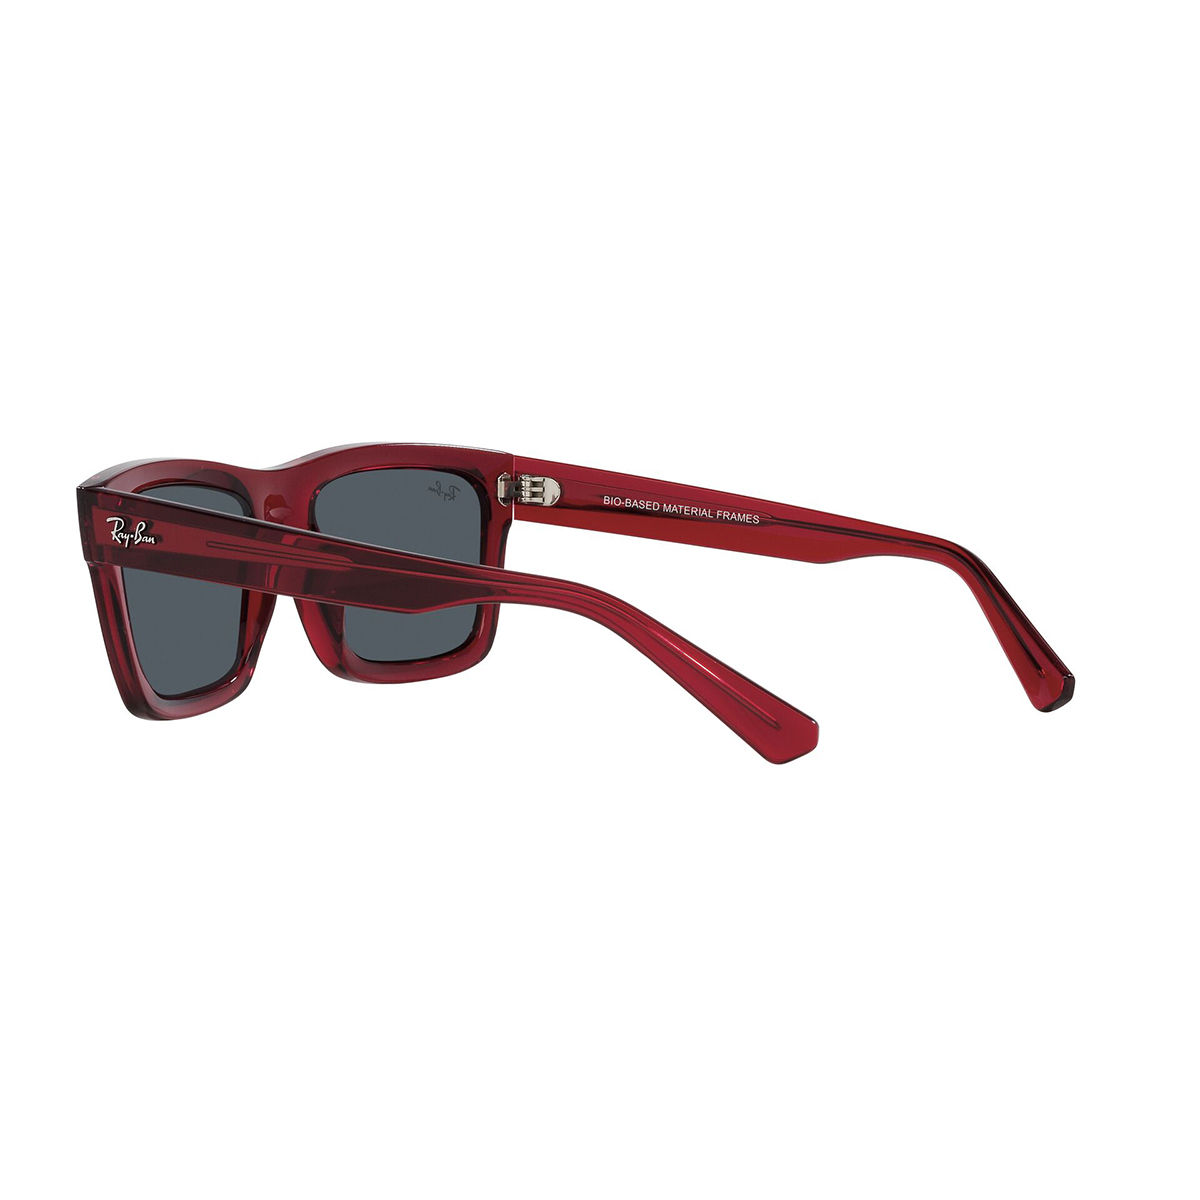 Unisex Adult Modern Sunglasses Red Sunglasses Gold Rectangle Frame UV400  SMCL078 - Etsy